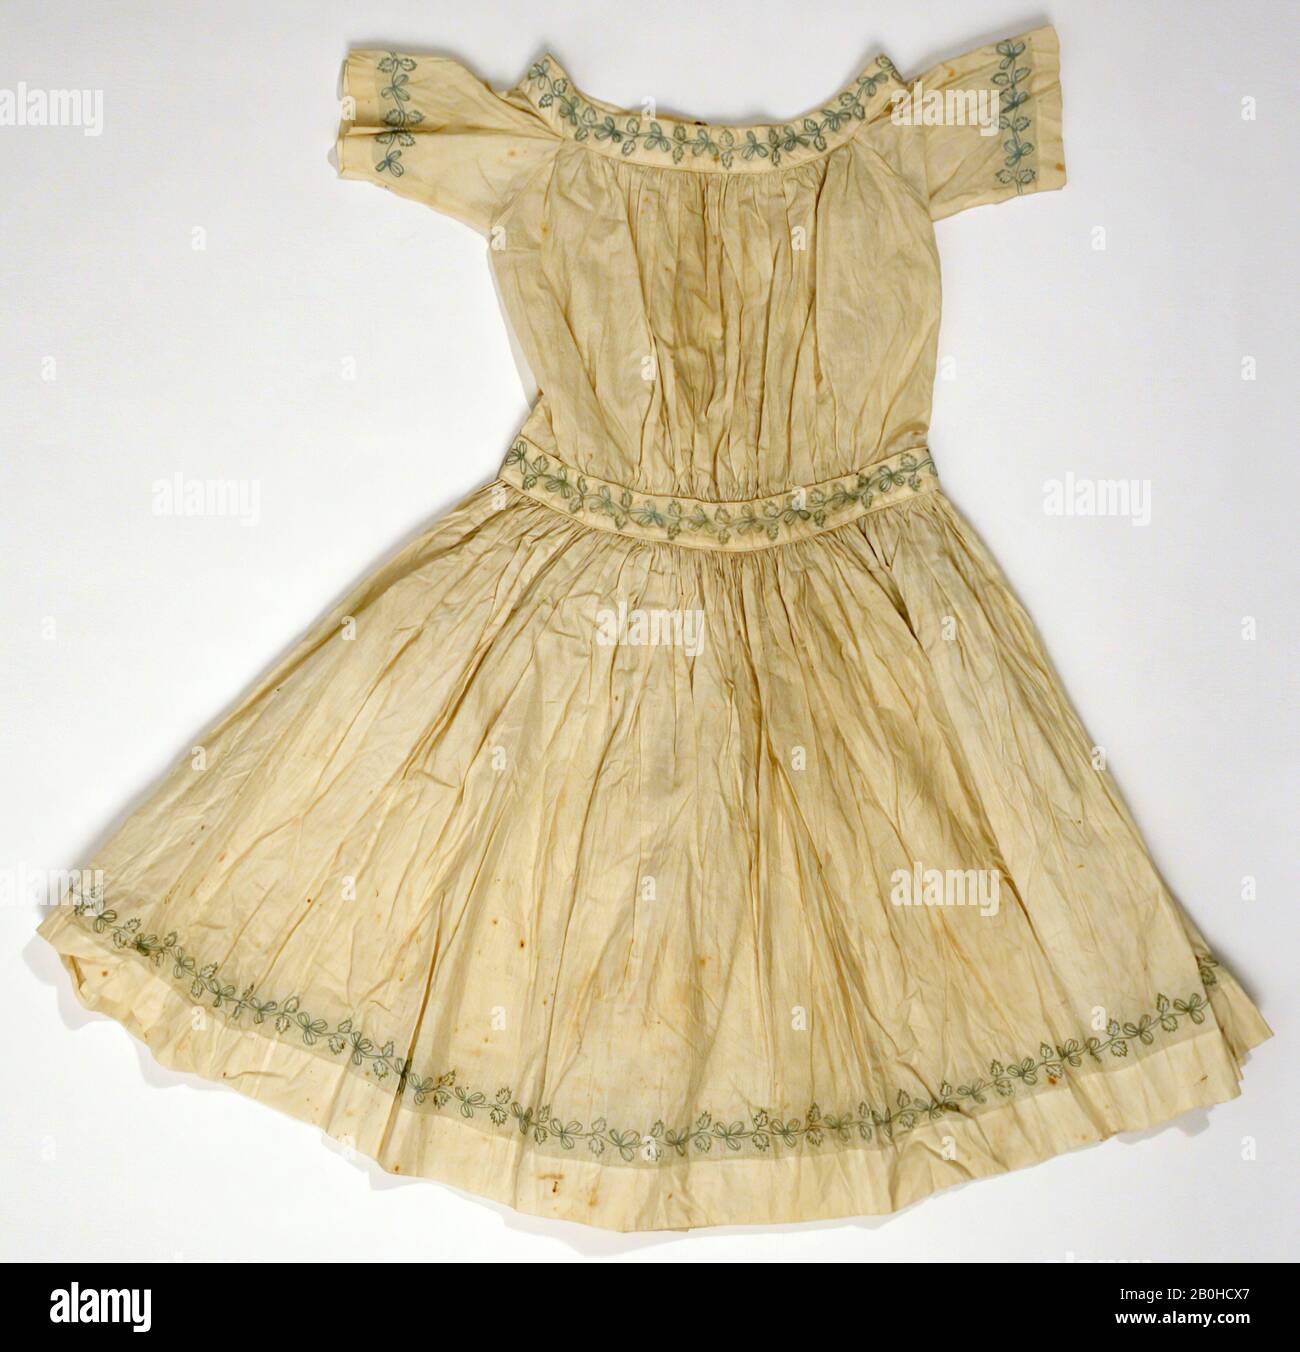 Robe, américaine, 1840, américaine, coton Banque D'Images